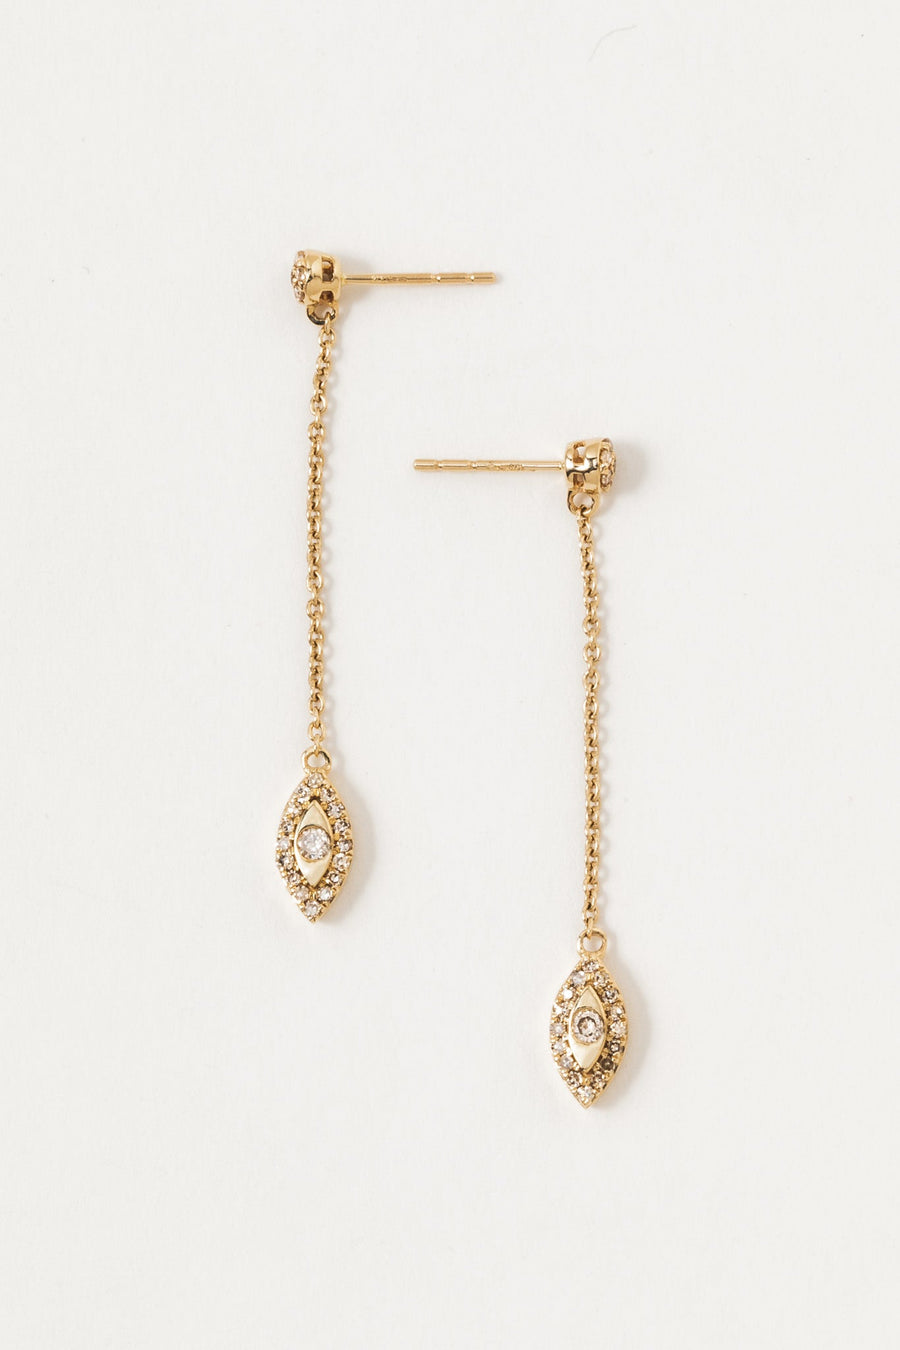 Tresor Jewelry Gold / Diamond 14kt Diamond Eyes Earrings